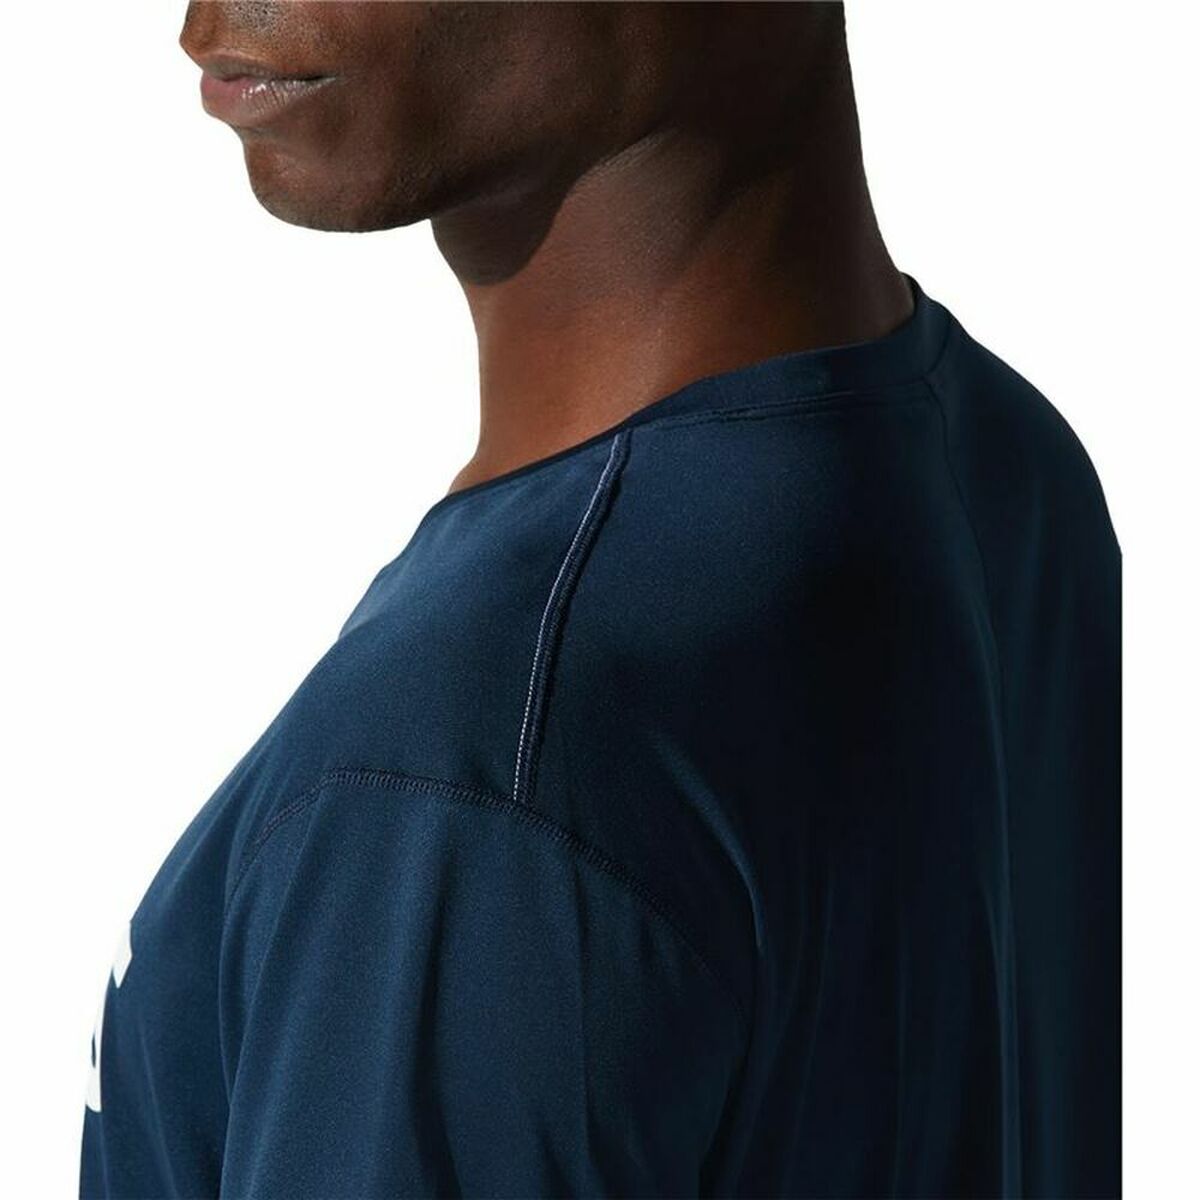 T-shirt à manches courtes homme Asics Core Blue marine